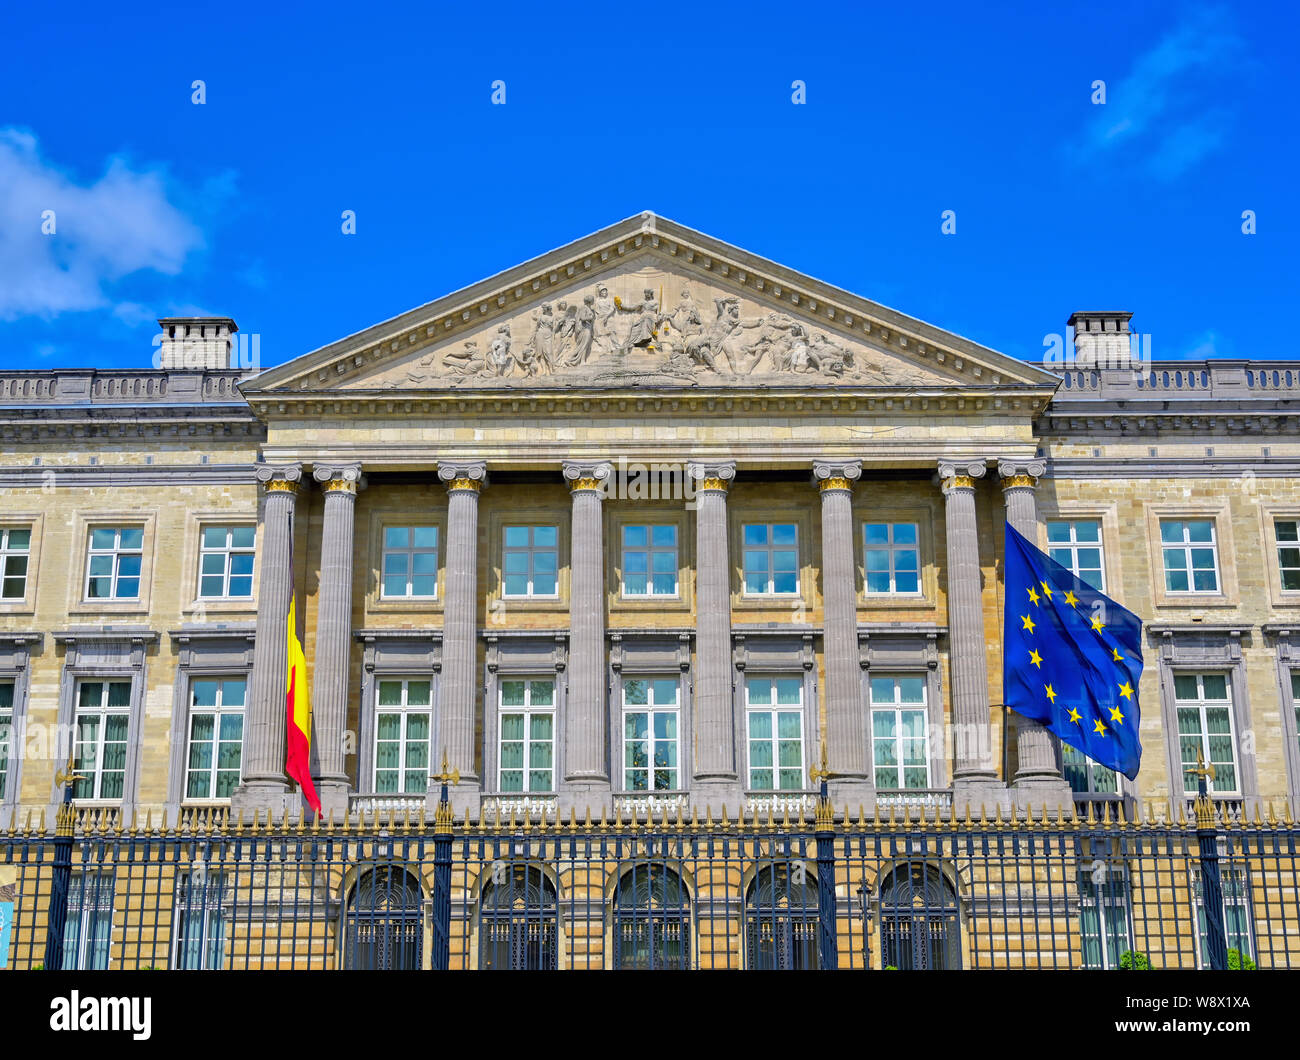 Brüssel, Belgien - April 27, 2019 - Der Palast der Nation, die Häuser das belgische Abgeordnetenhaus und den Senat in Brüssel, Belgien Stockfoto